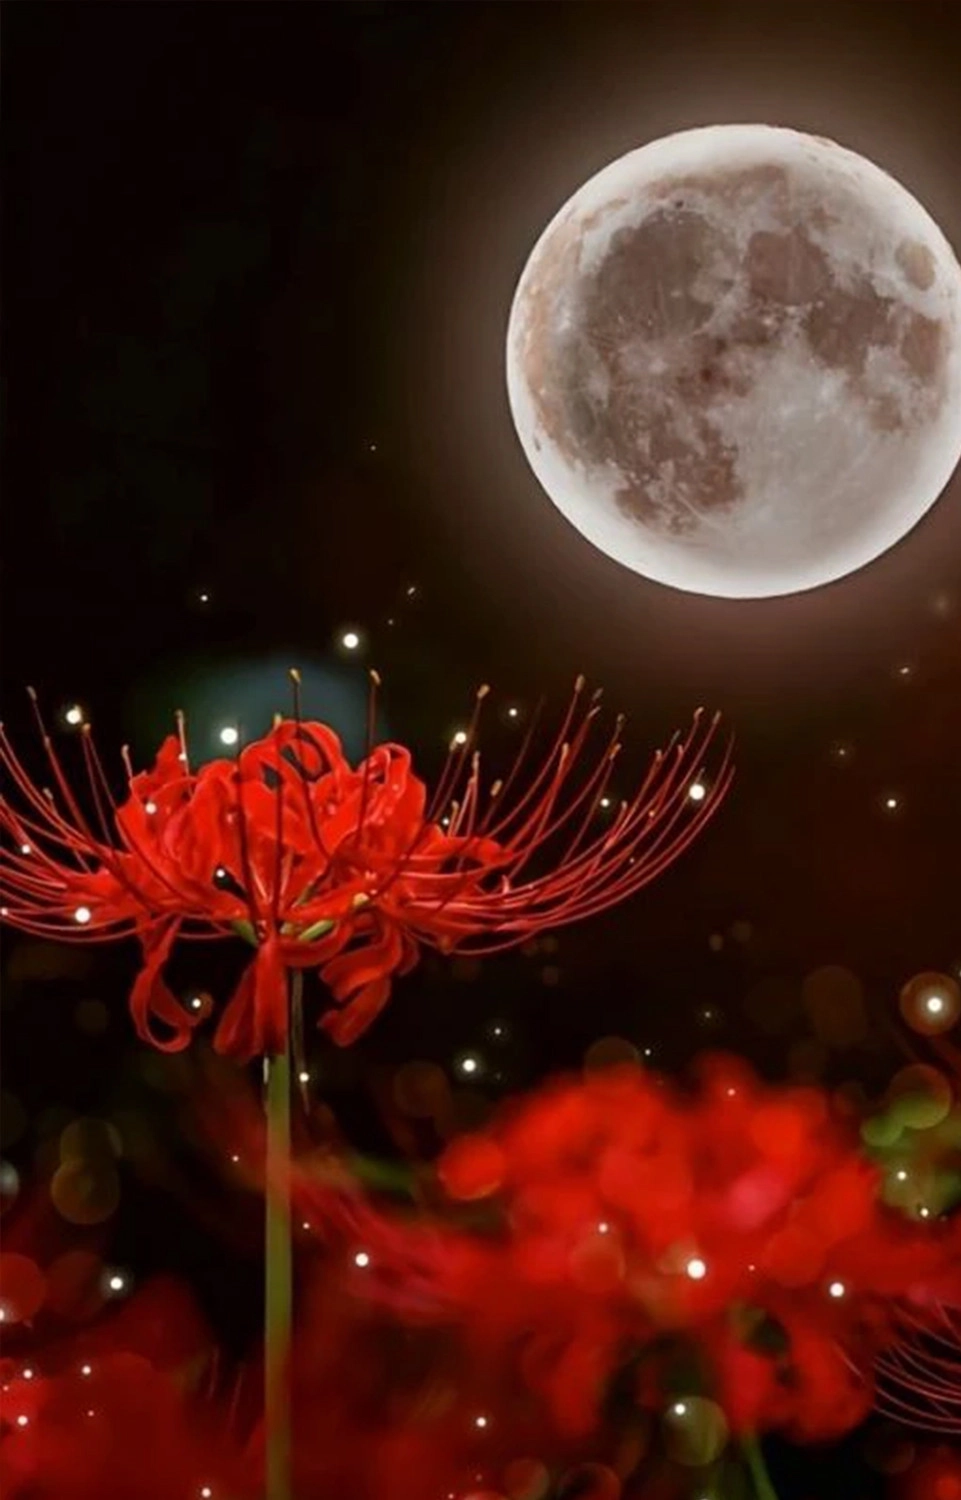  Ảnh nền hoa bỉ ngạn đỏ lung linh dưới ánh trăng